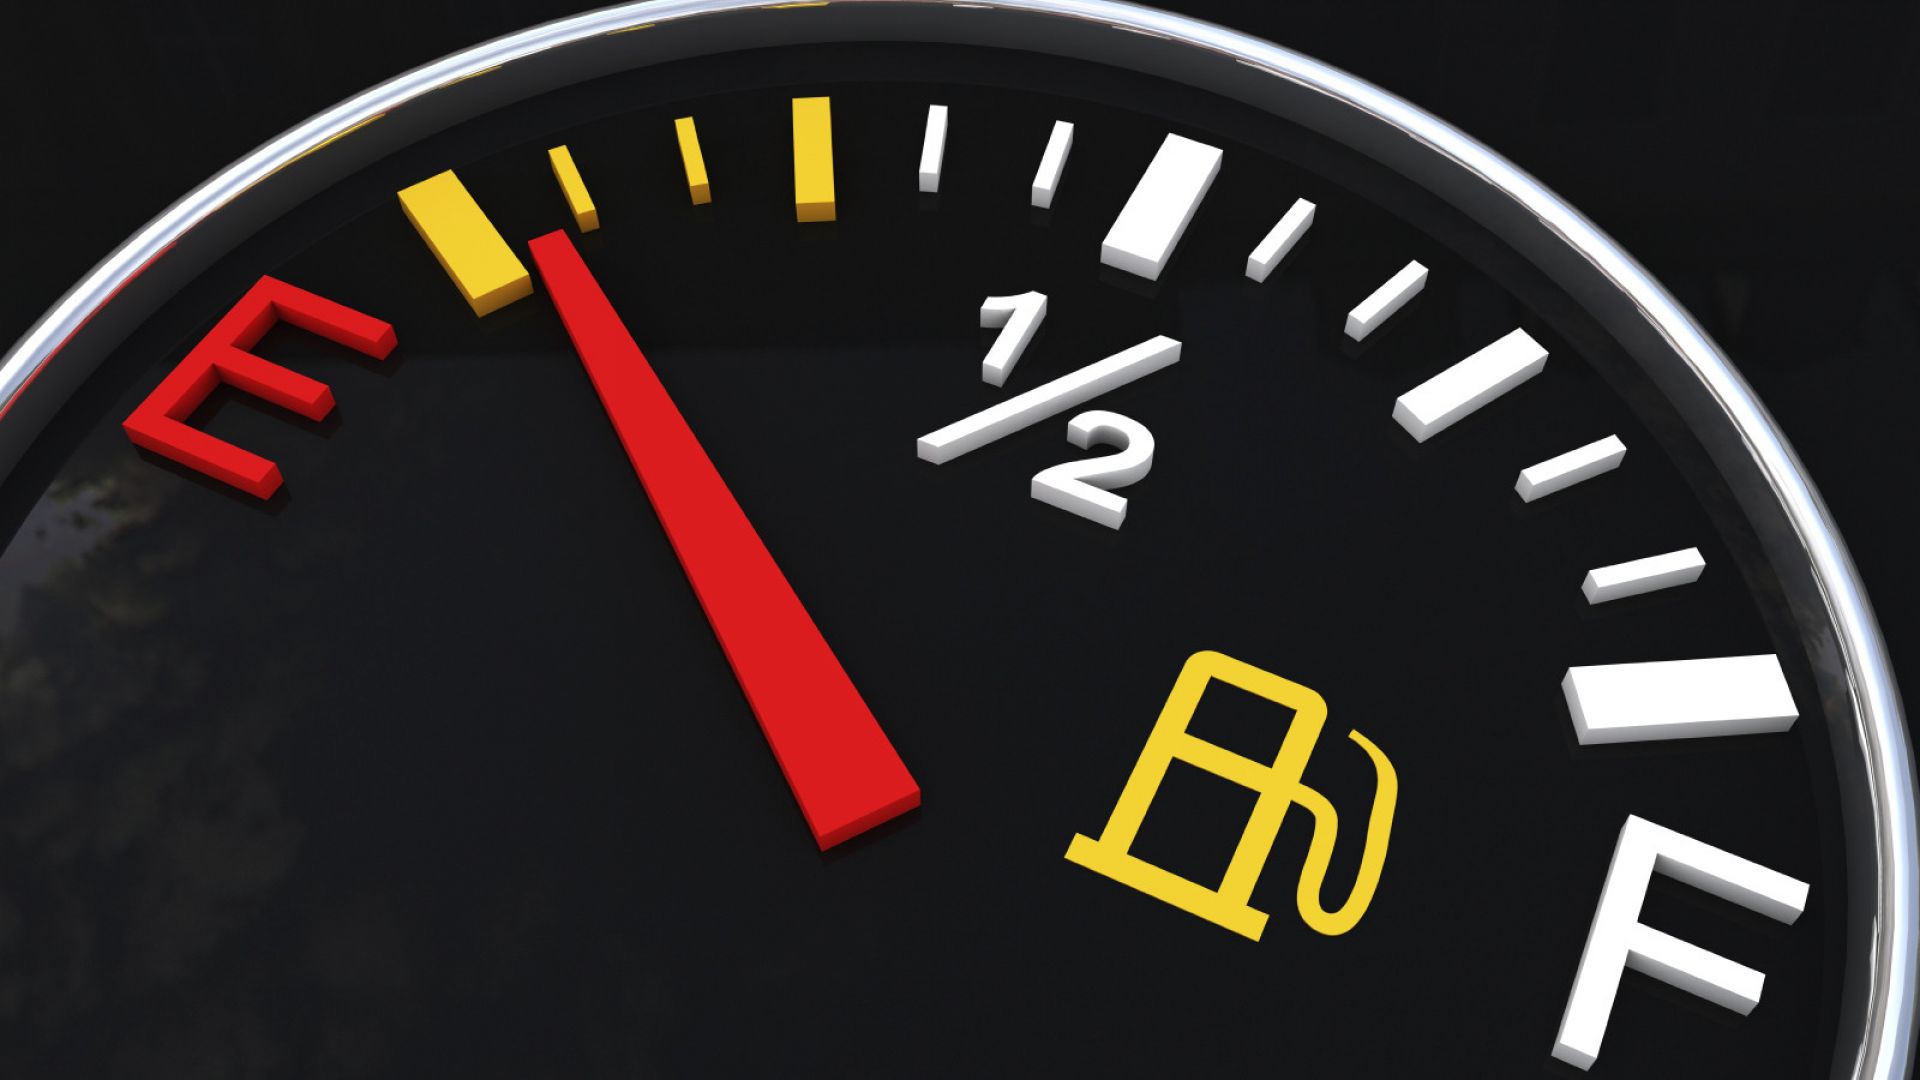 Как снизить расход топлива: Моторное масло ROLF – качество без компромиссов! / Страница не найдена (ошибка 404)